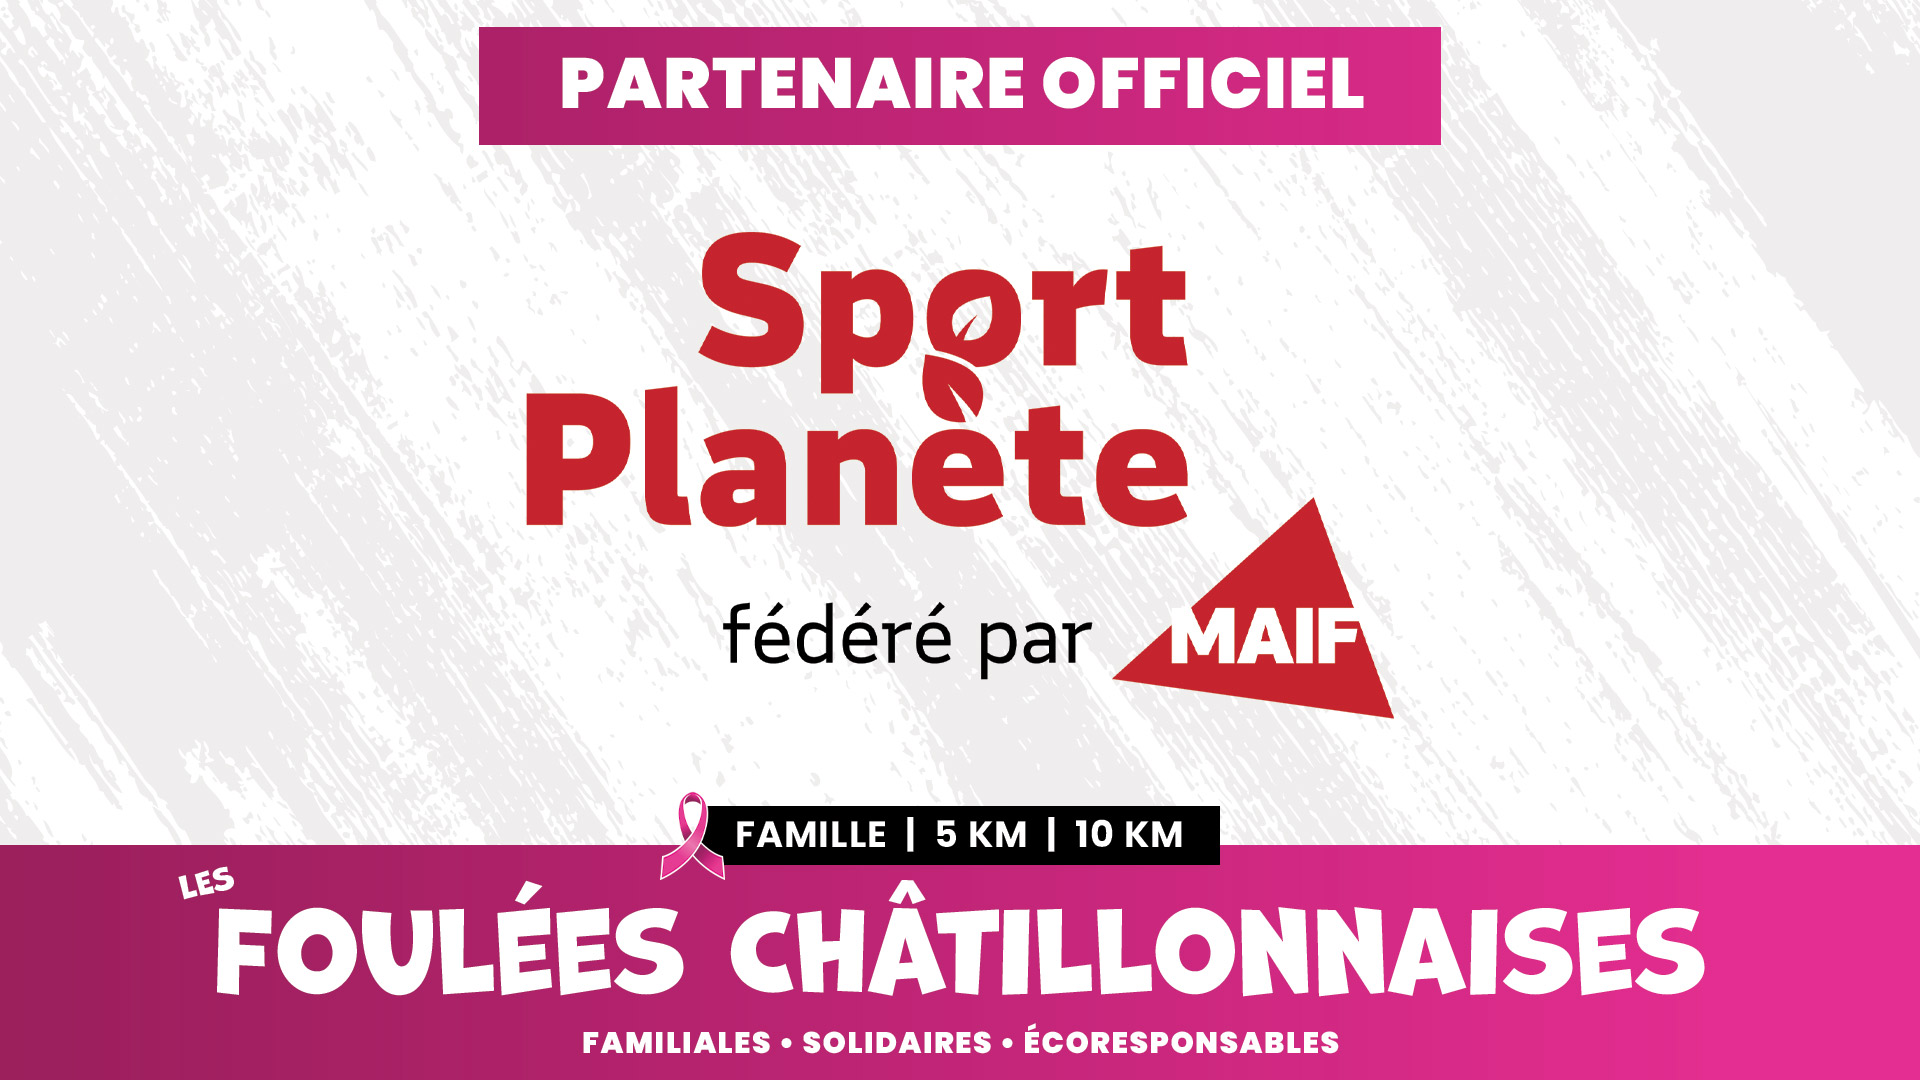 Sport Planète, fédéré par MAIF - Partenaire Officiel des Foulées Châtillonnaises